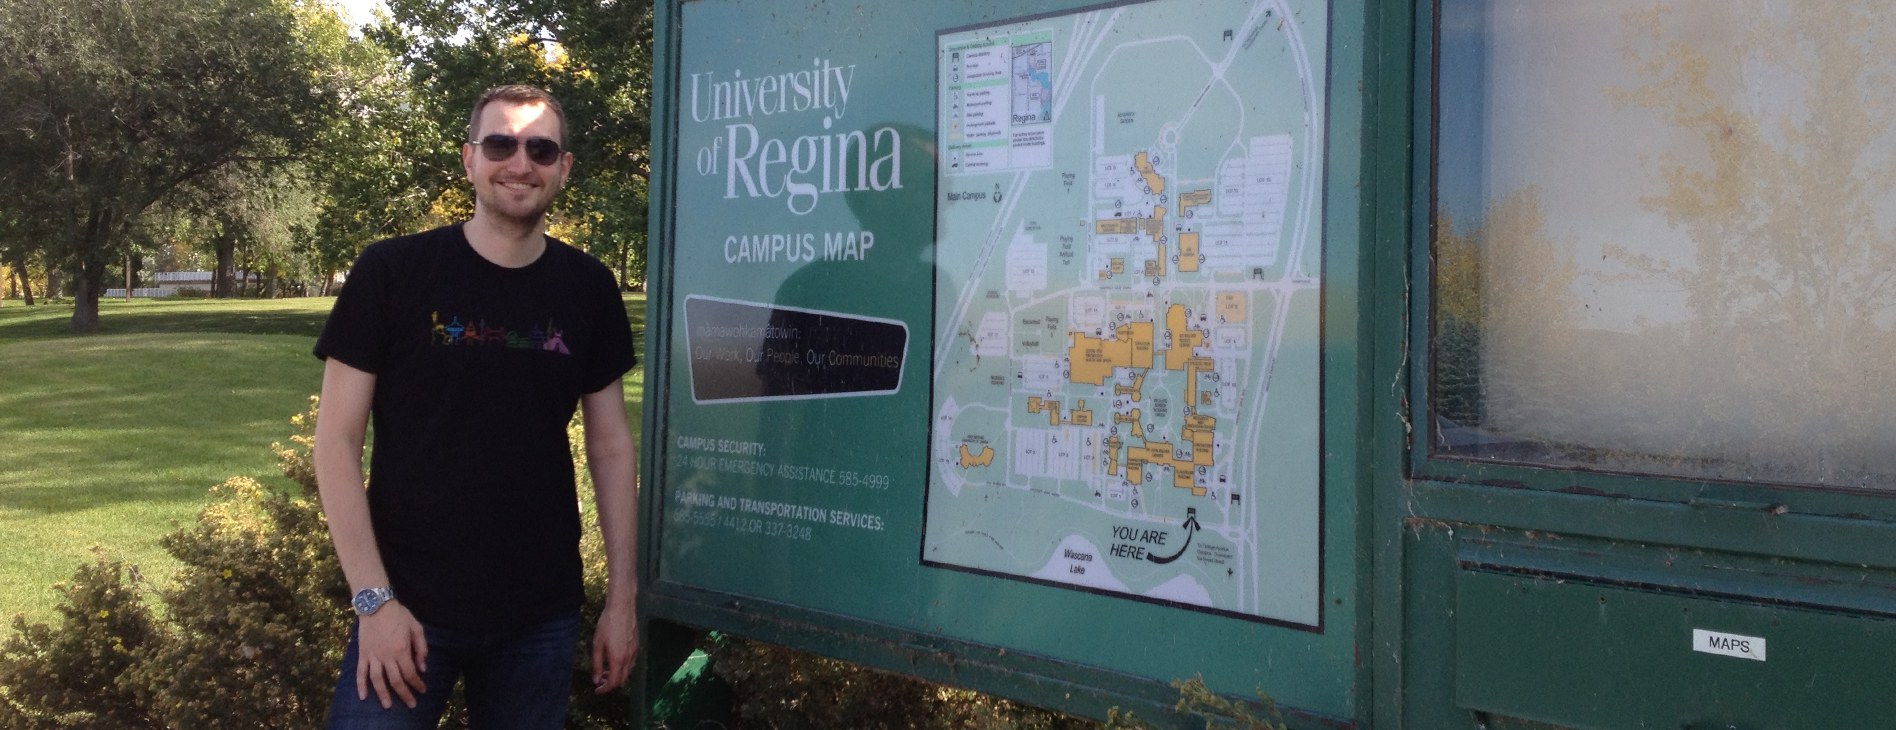 Campus Map University of Regina